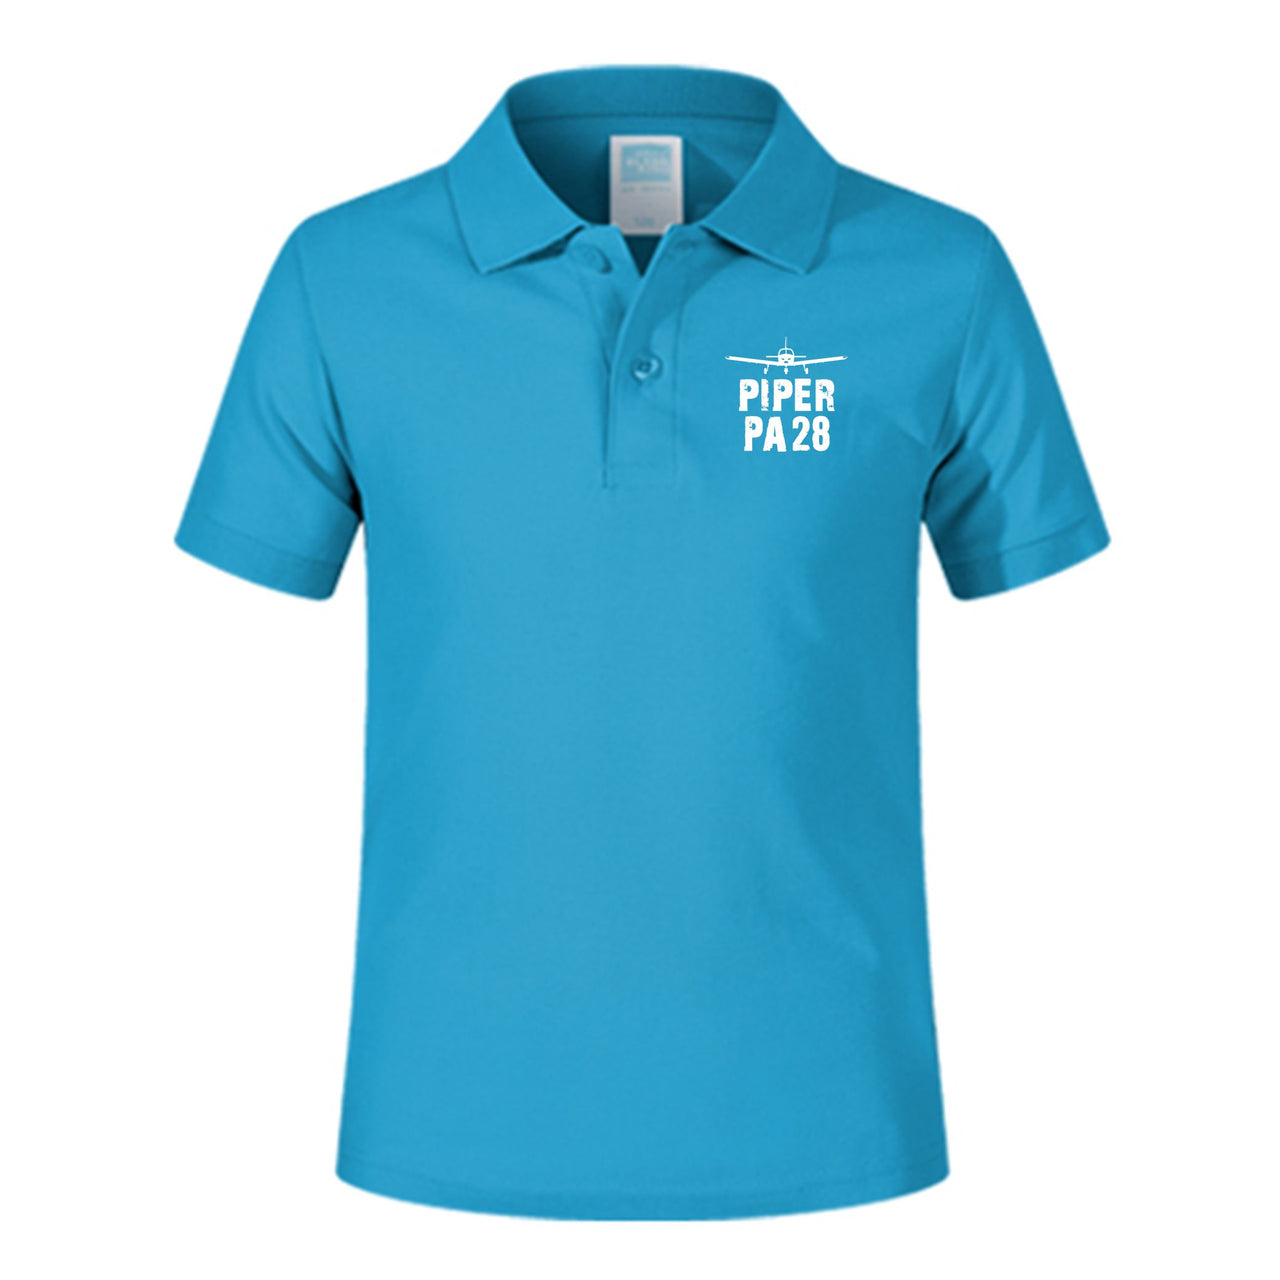 Piper PA28 & Plane Designed Children Polo T-Shirts